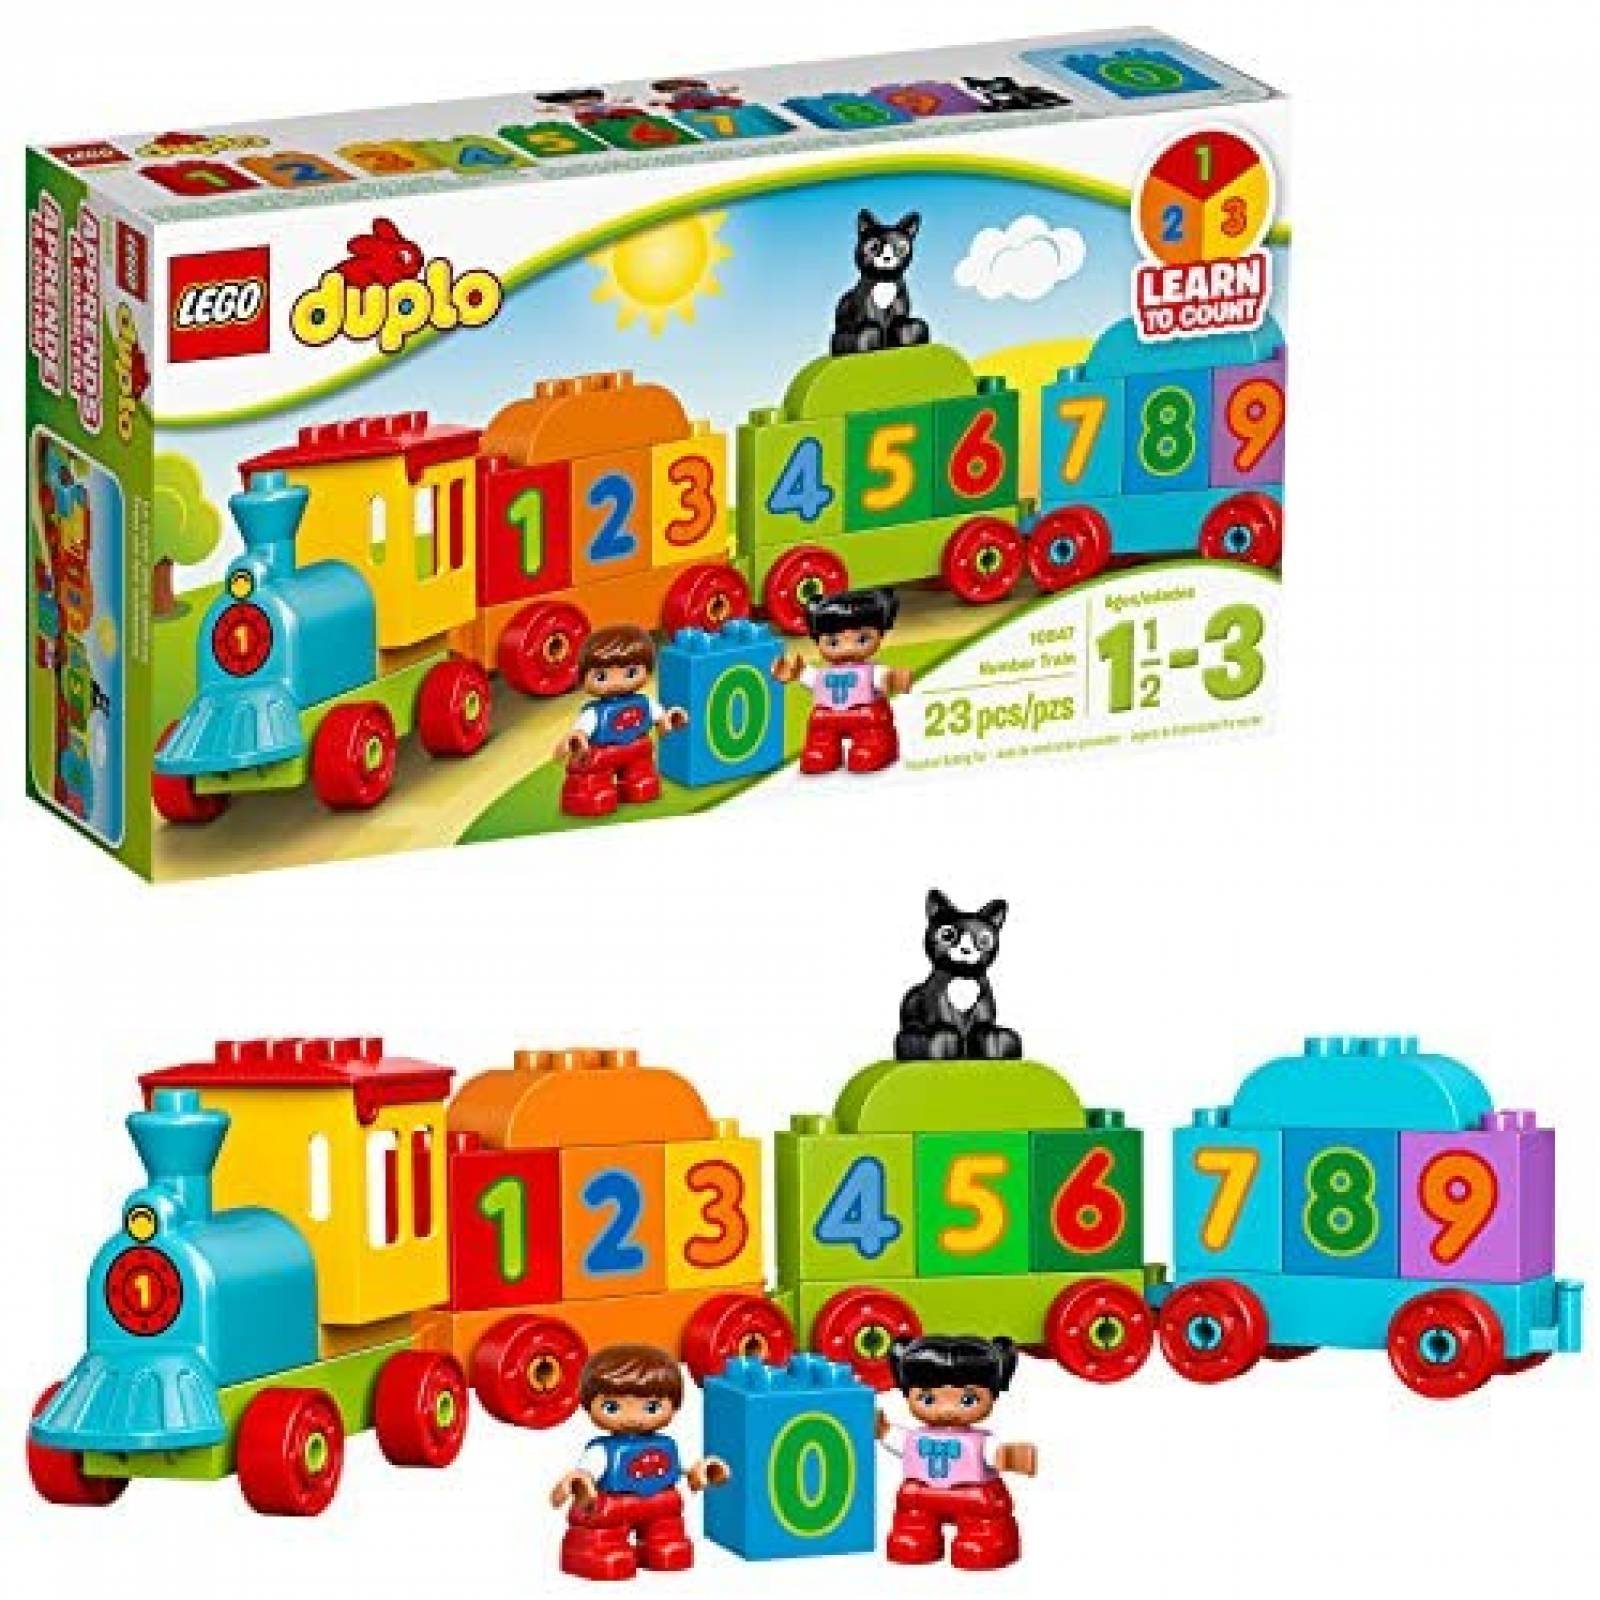 Tren de Juguete LEGO Educativo de 23 Piezas para Niños